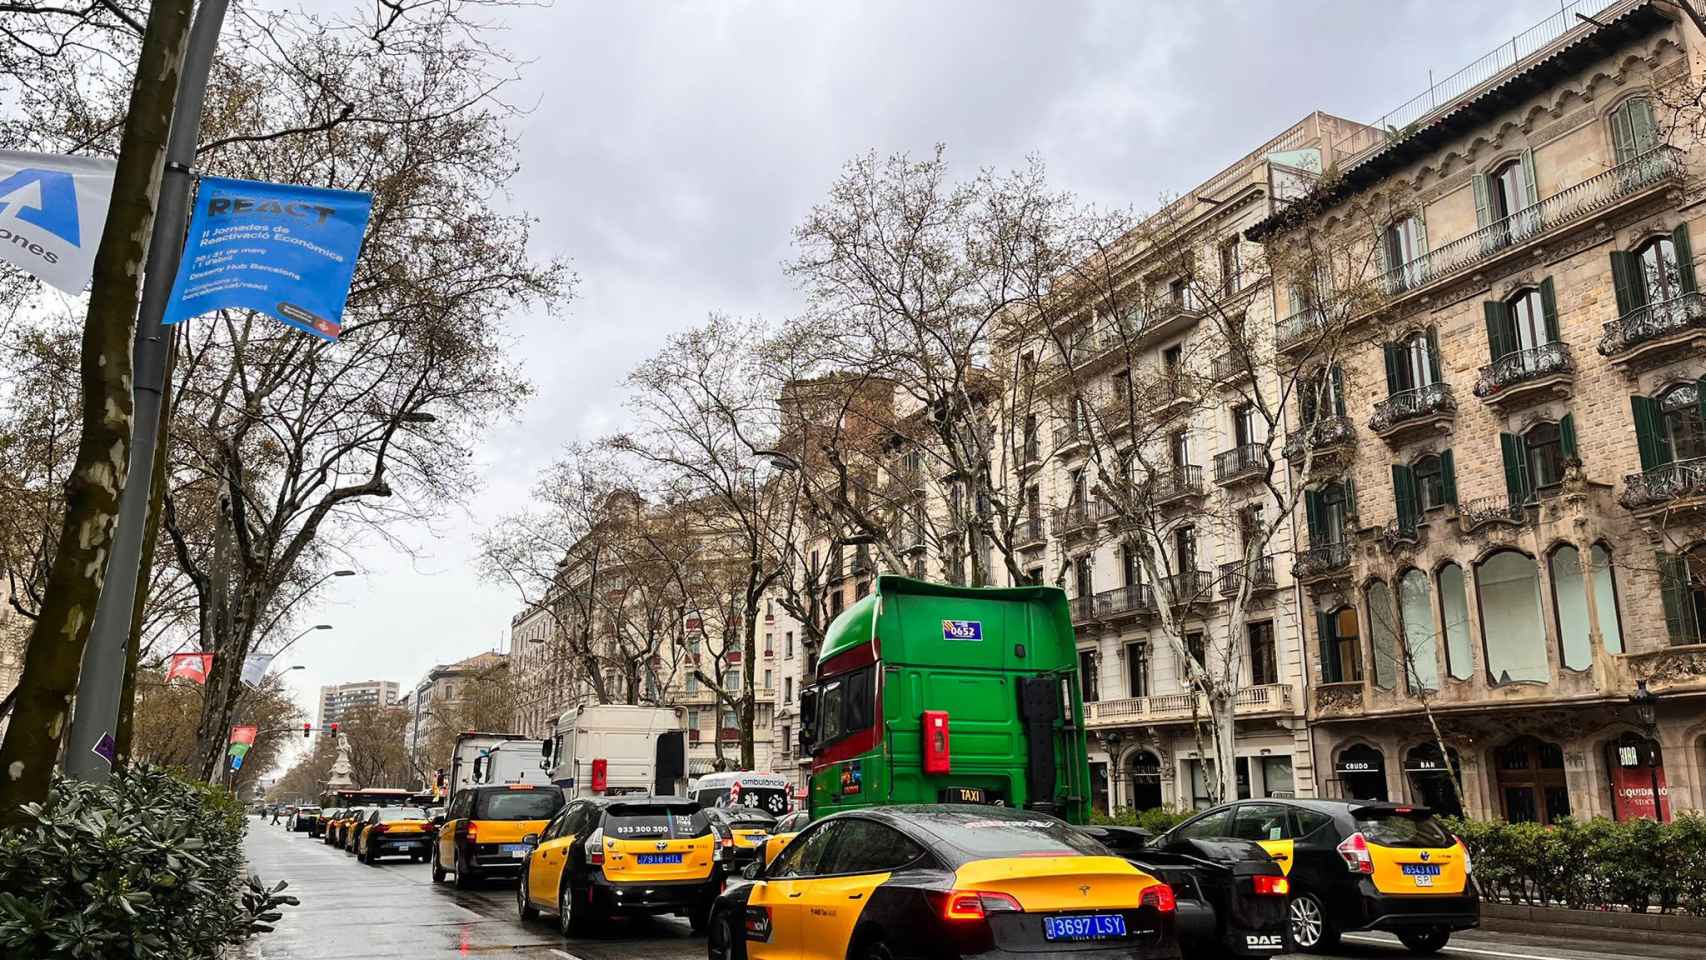 Marcha lenta de taxis en Barcelona en una imagen de archivo / METRÓPOLI